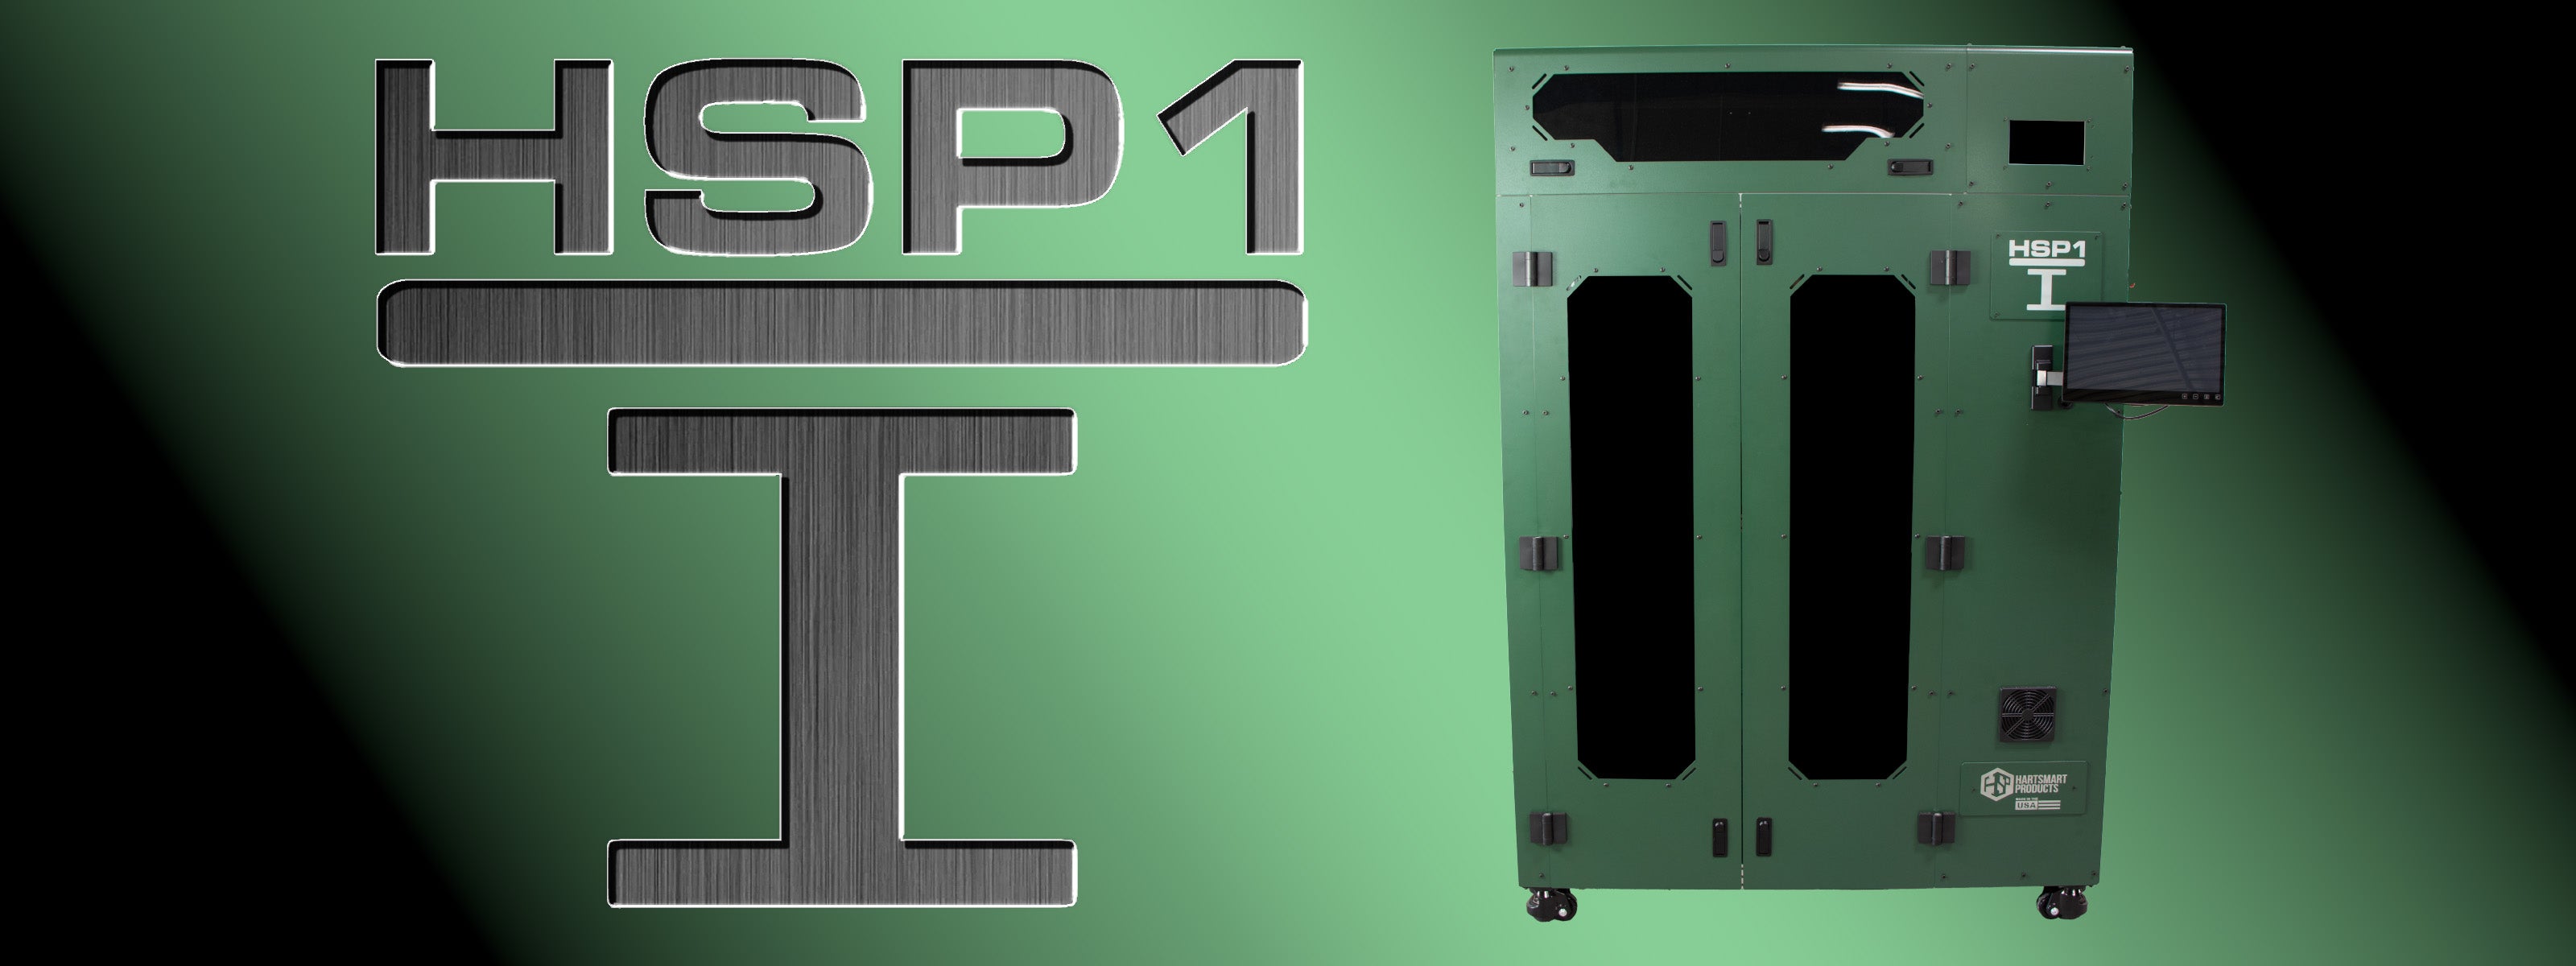 HSP1-I 3D Printer